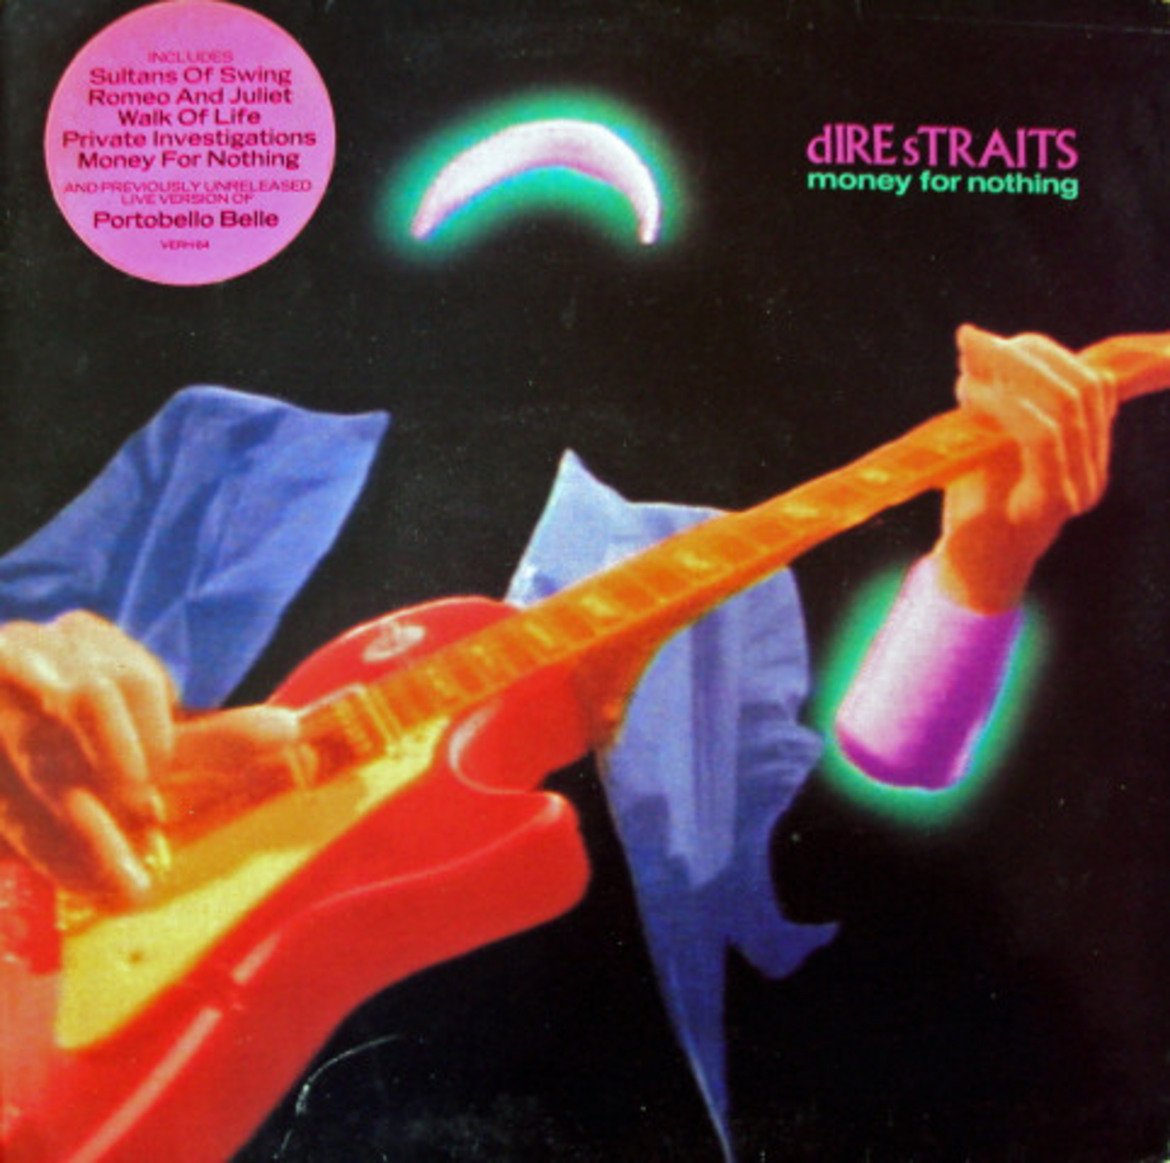 Dire Straits - Money For Nothing 
След като предния път най-срамно пропуснахме Dire Straits, сега няма как да ги подминем. Големият дебат тук беше между Money For Nothing и Sultans Of Love, но все пак резкият, насечен звук от китарата на Марк Нопфлър тук надделя. 